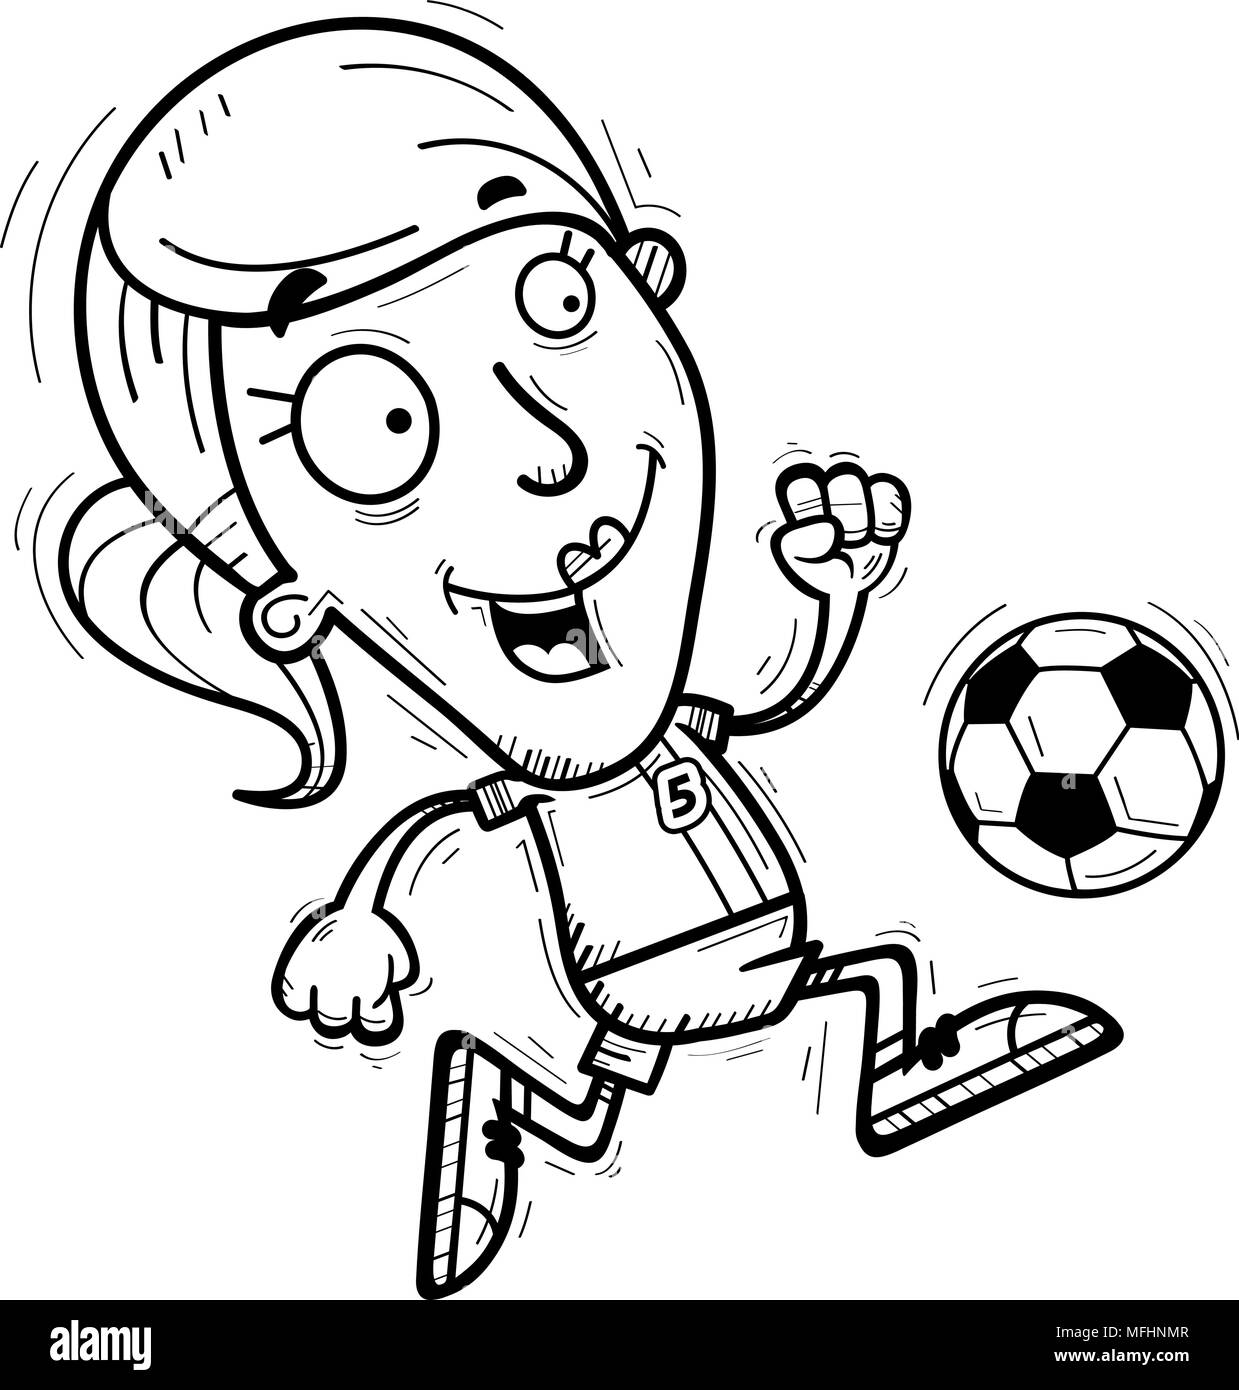 Illustration d'une caricature d'un joueur de soccer femme dribbler un ballon de soccer. Illustration de Vecteur